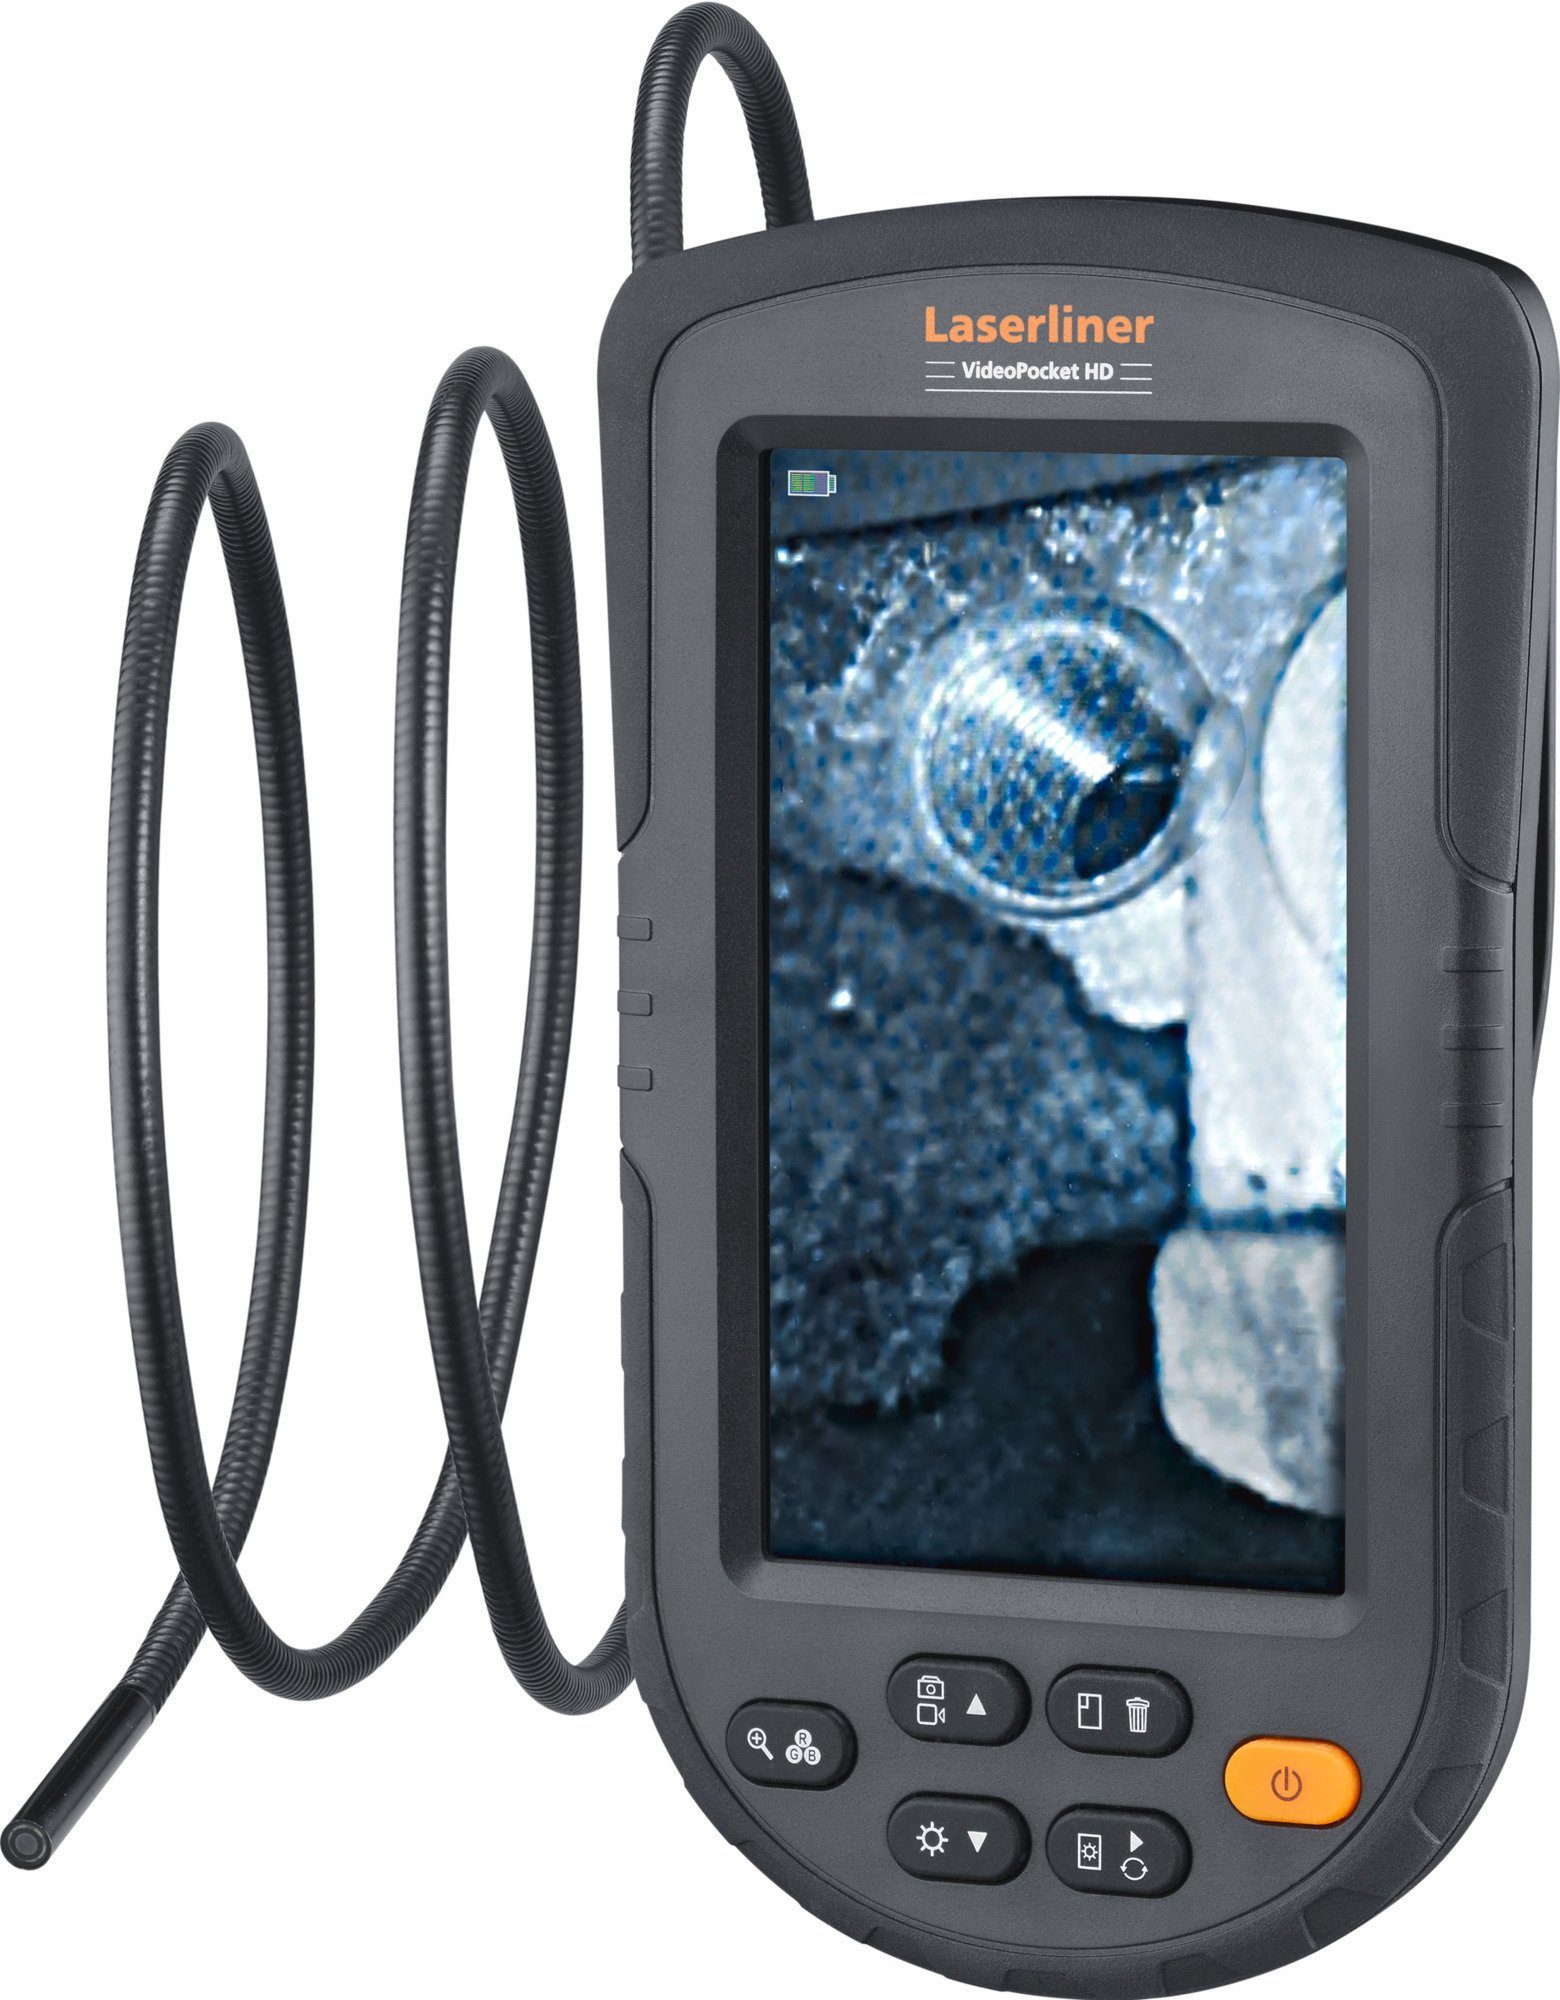 LASERLINER Umarex Laserliner Videoinspektionssystem VideoPocket HD Überwachungskamera